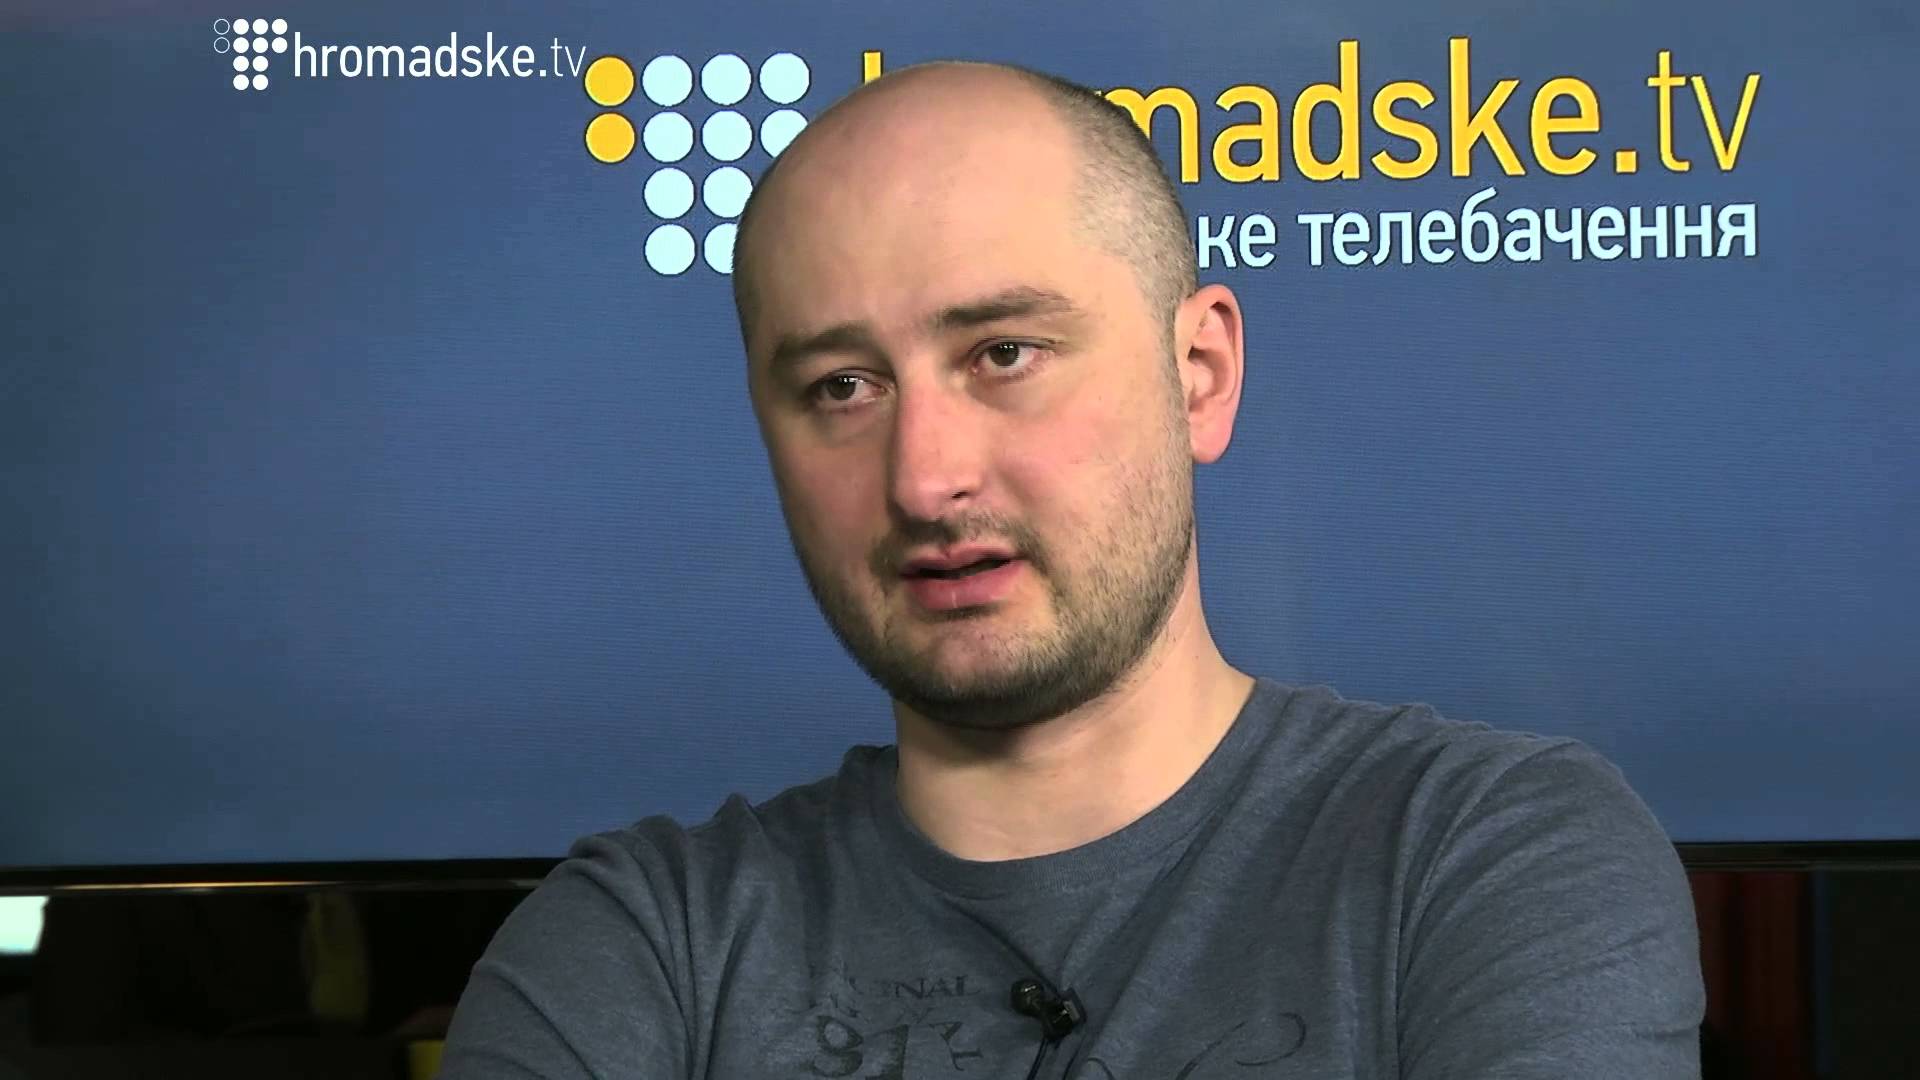 Аркадий Бабченко: Чтобы сделать репортаж из ада, нужно получить аккредитацию Сатаны